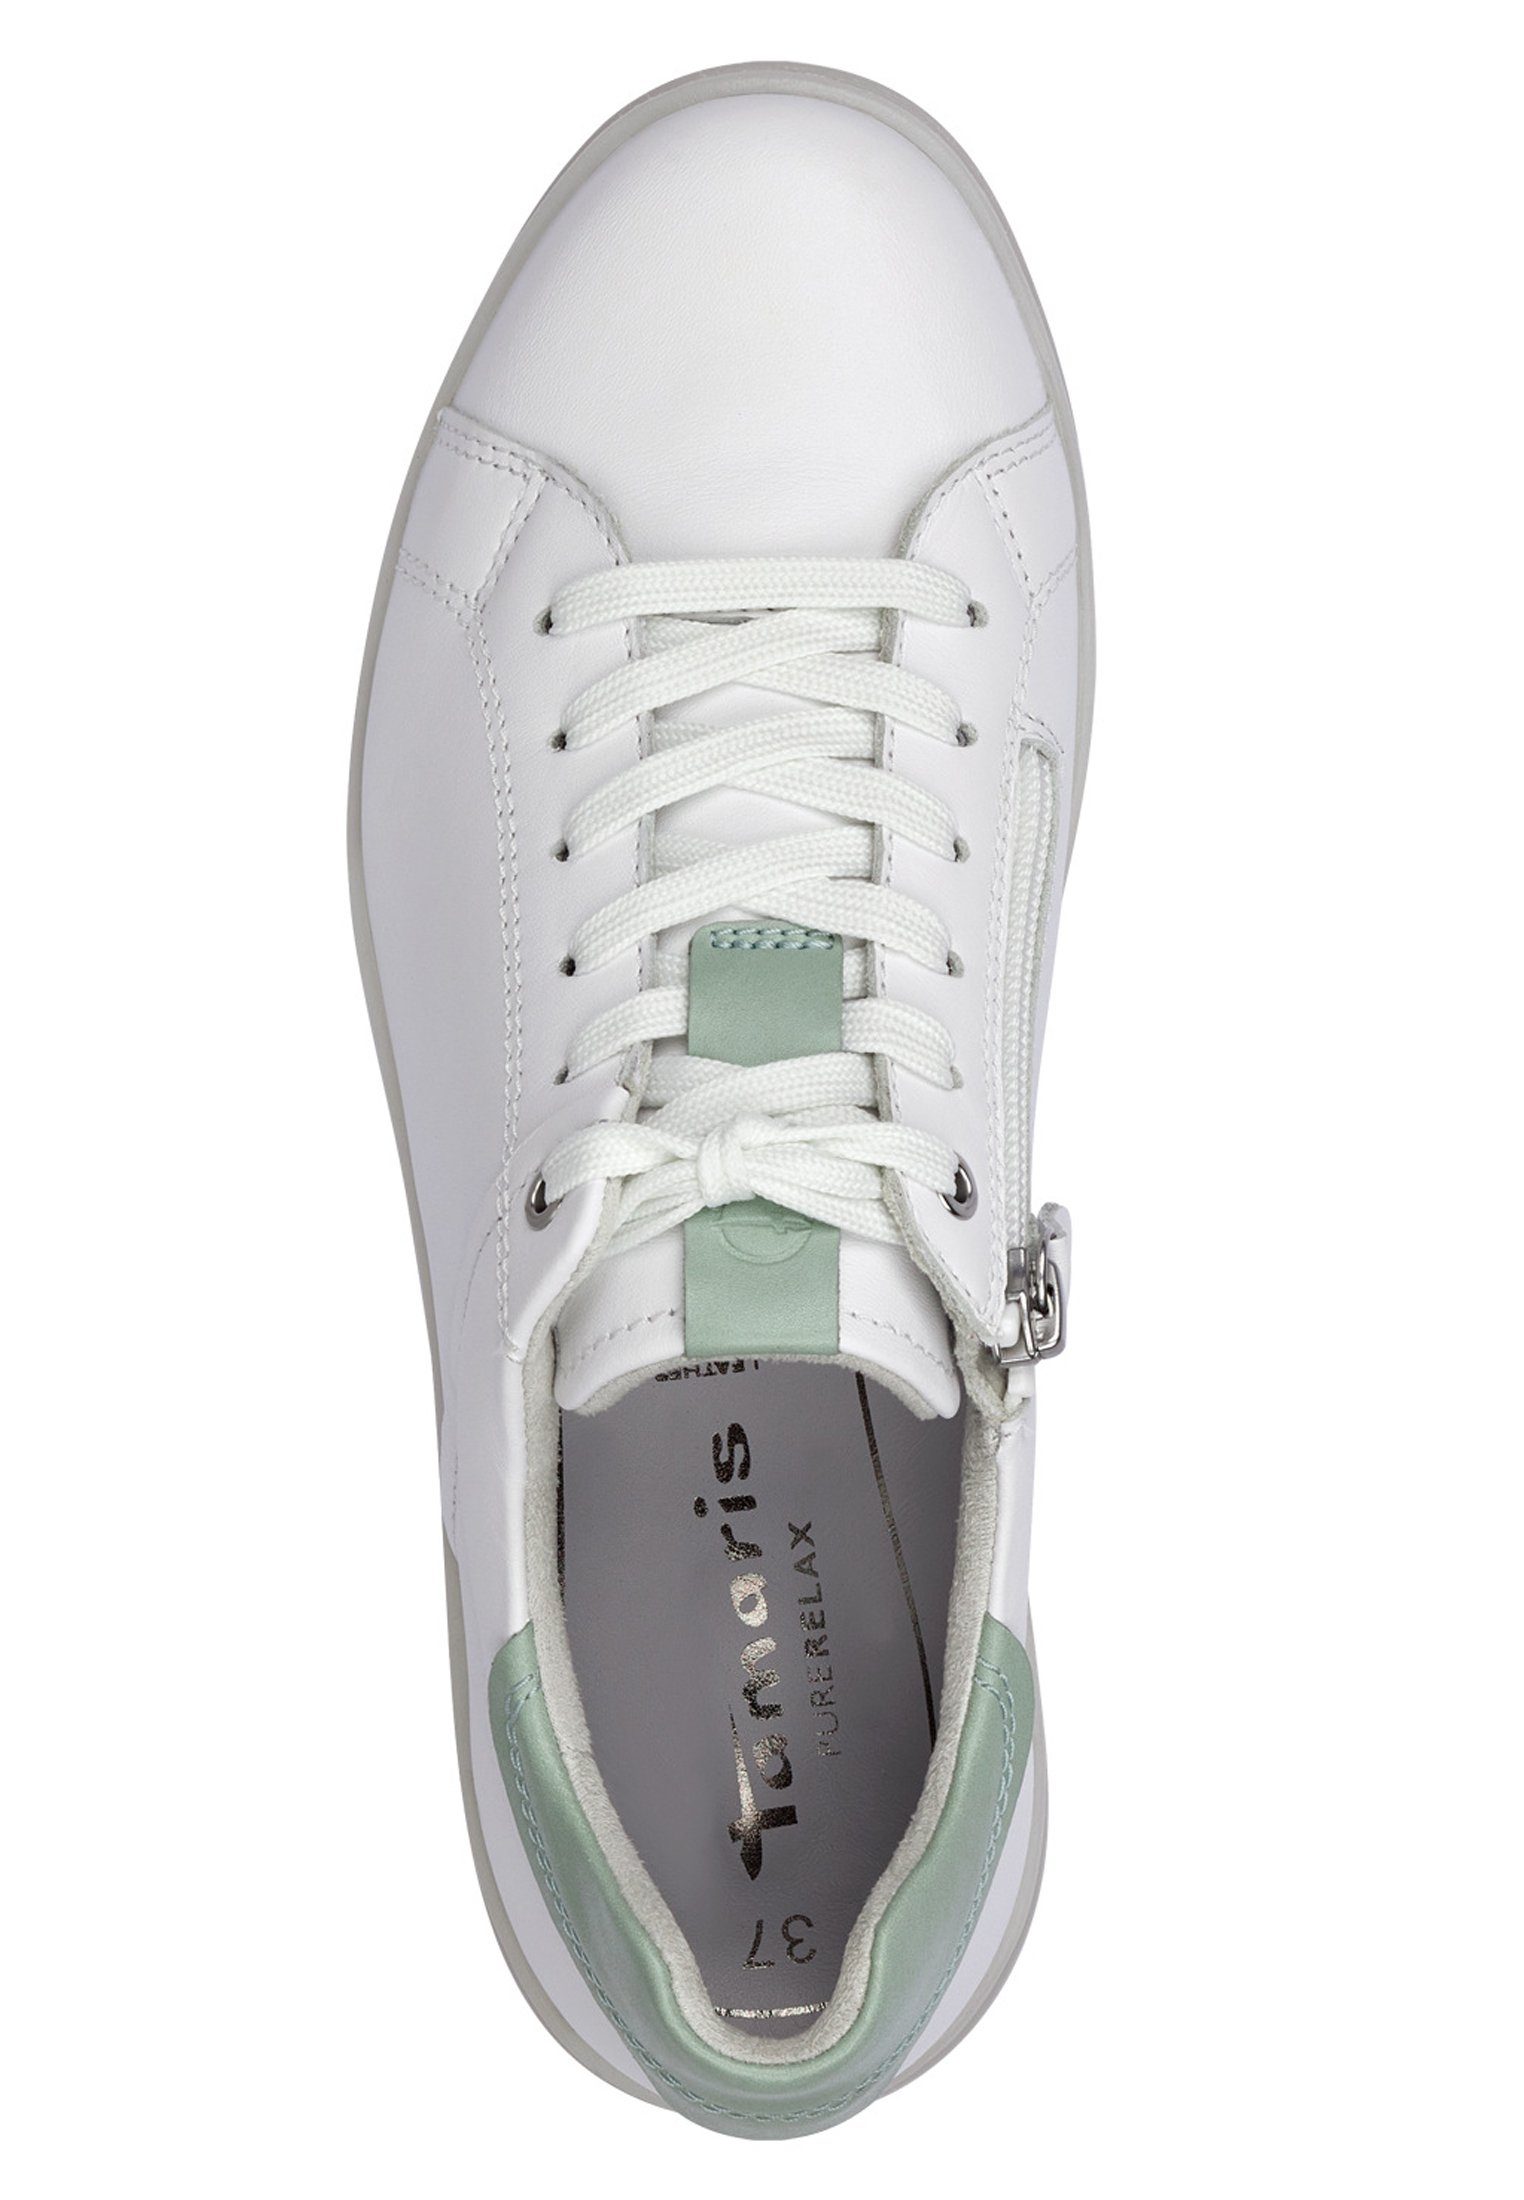 178 1-23780-30 Mint Sneaker Tamaris White